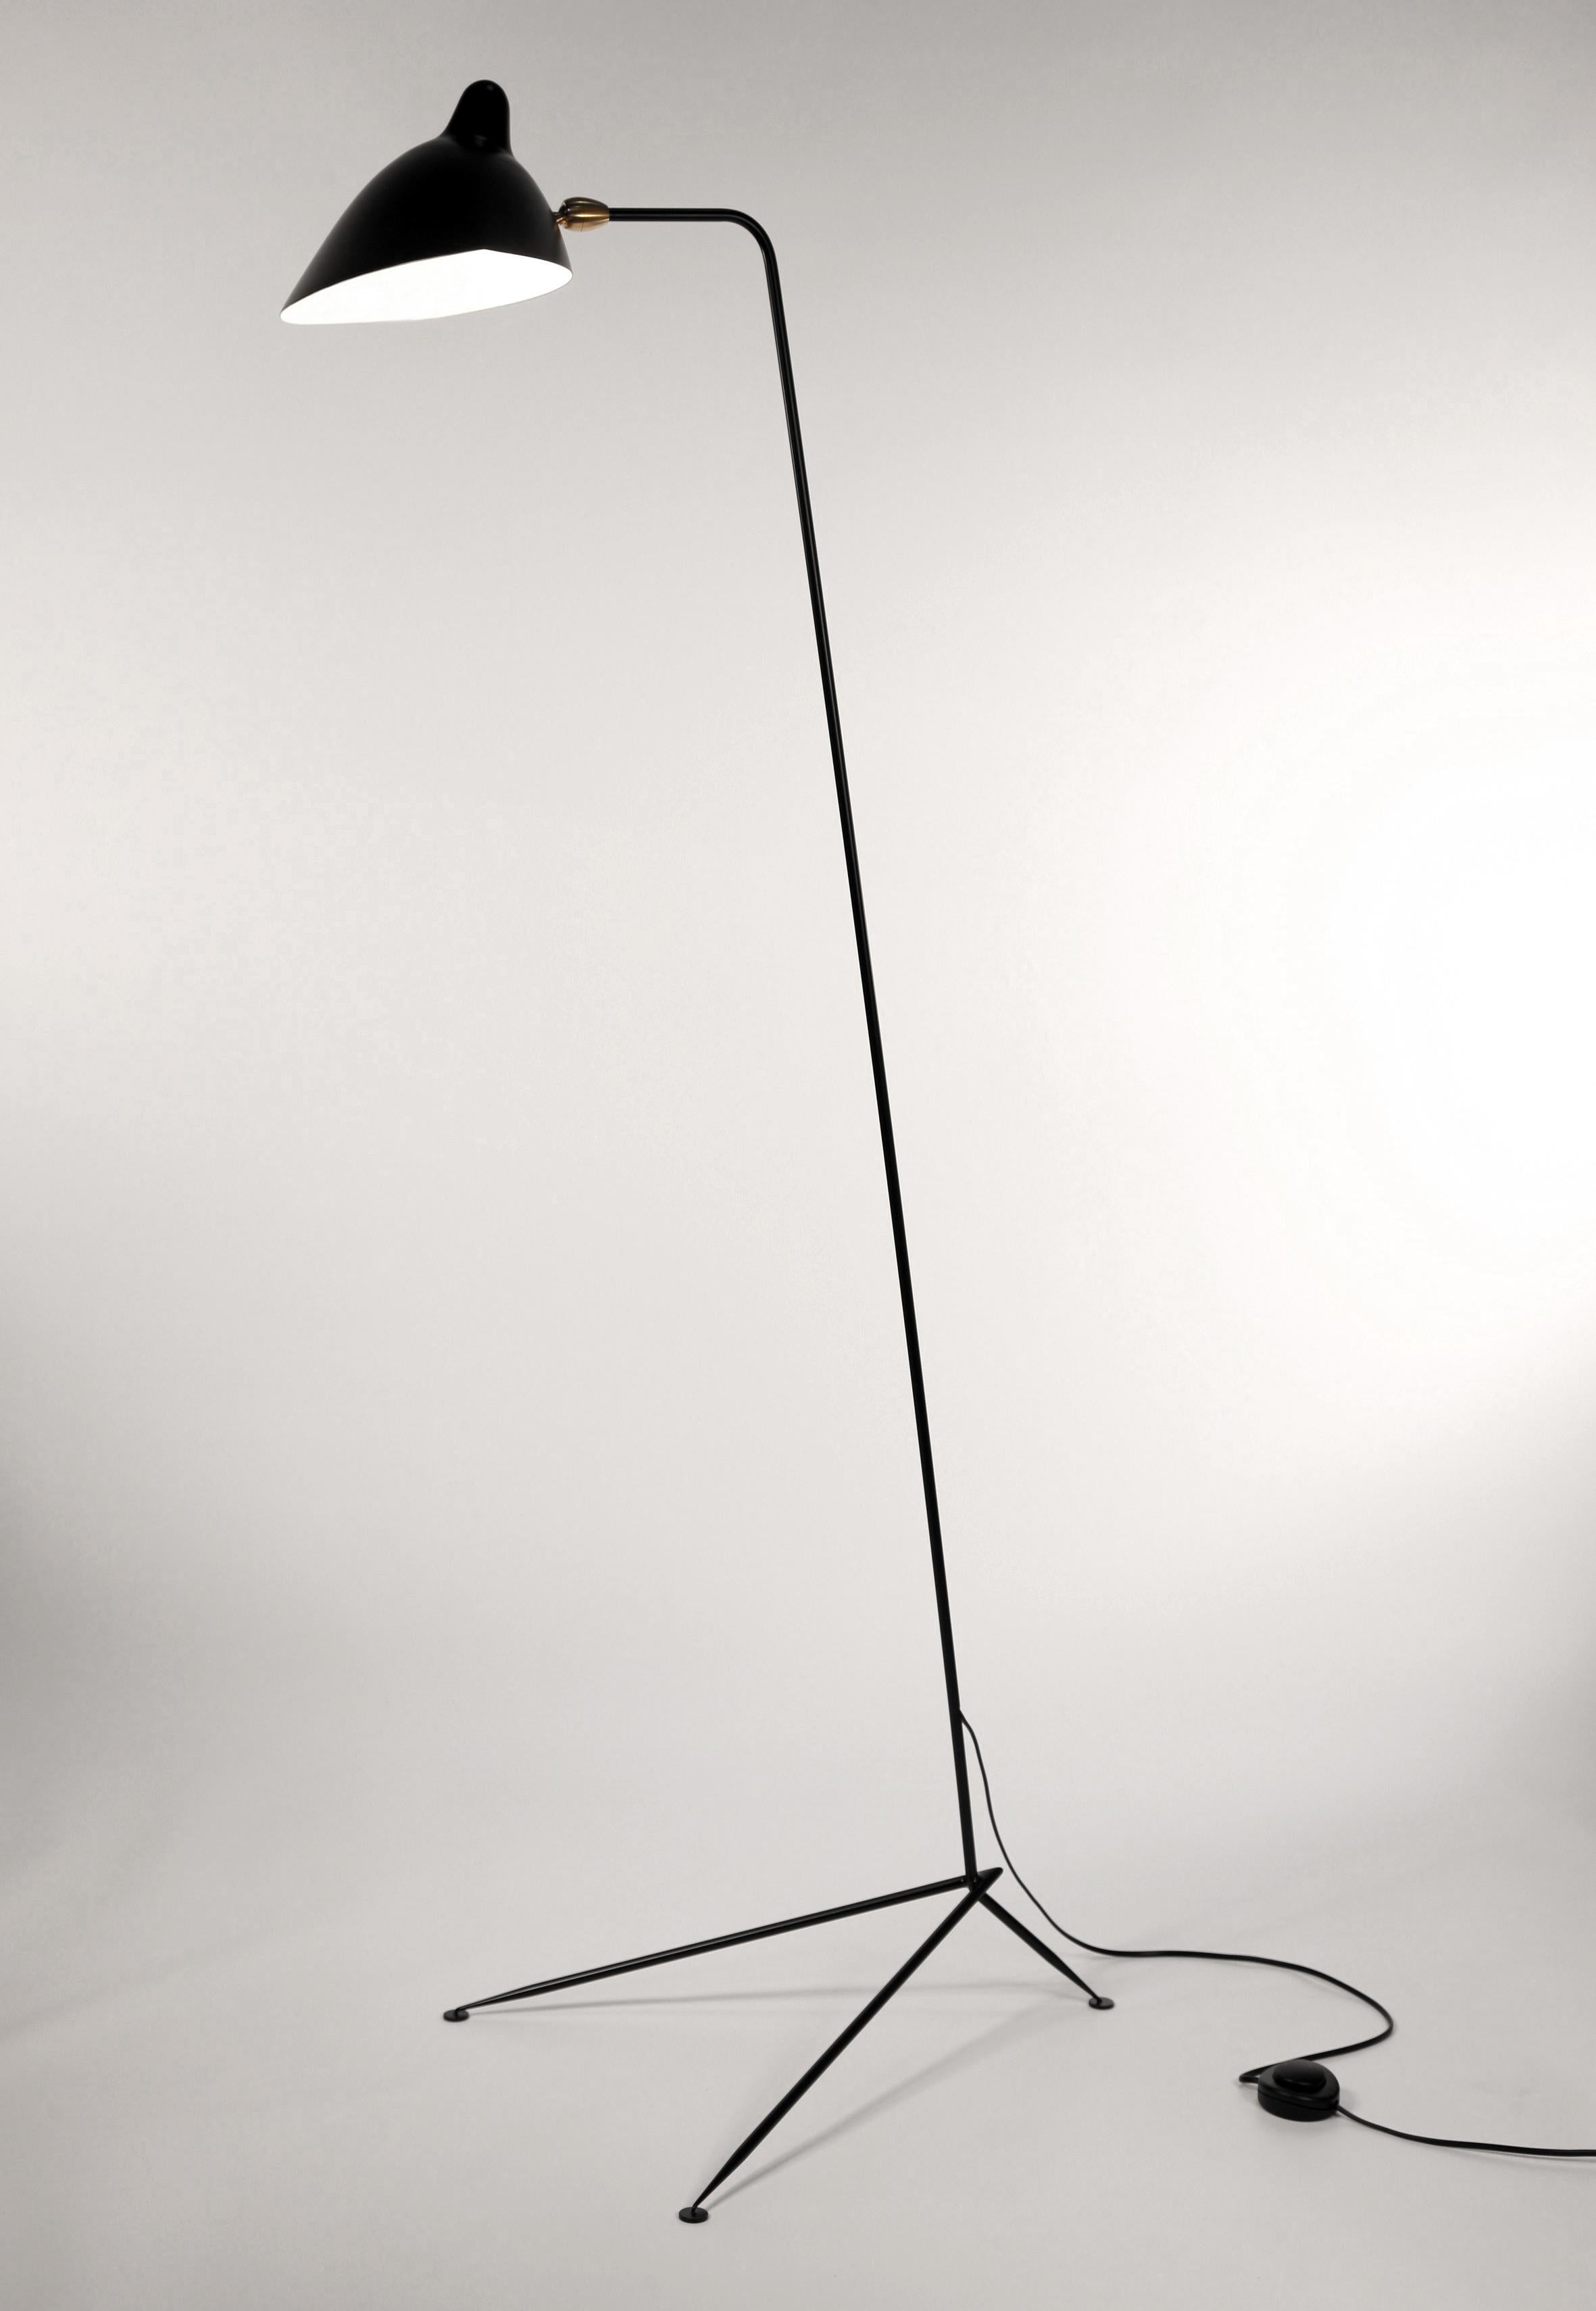 Description :
Des lignes simples et épurées décrivent l'élégance de ce lampadaire Serge Mouille. Un bras long et fin soutenu par une base triangulaire effilée permet à l'abat-jour pivotant d'éclairer sous n'importe quel angle.
Mesures : 18 